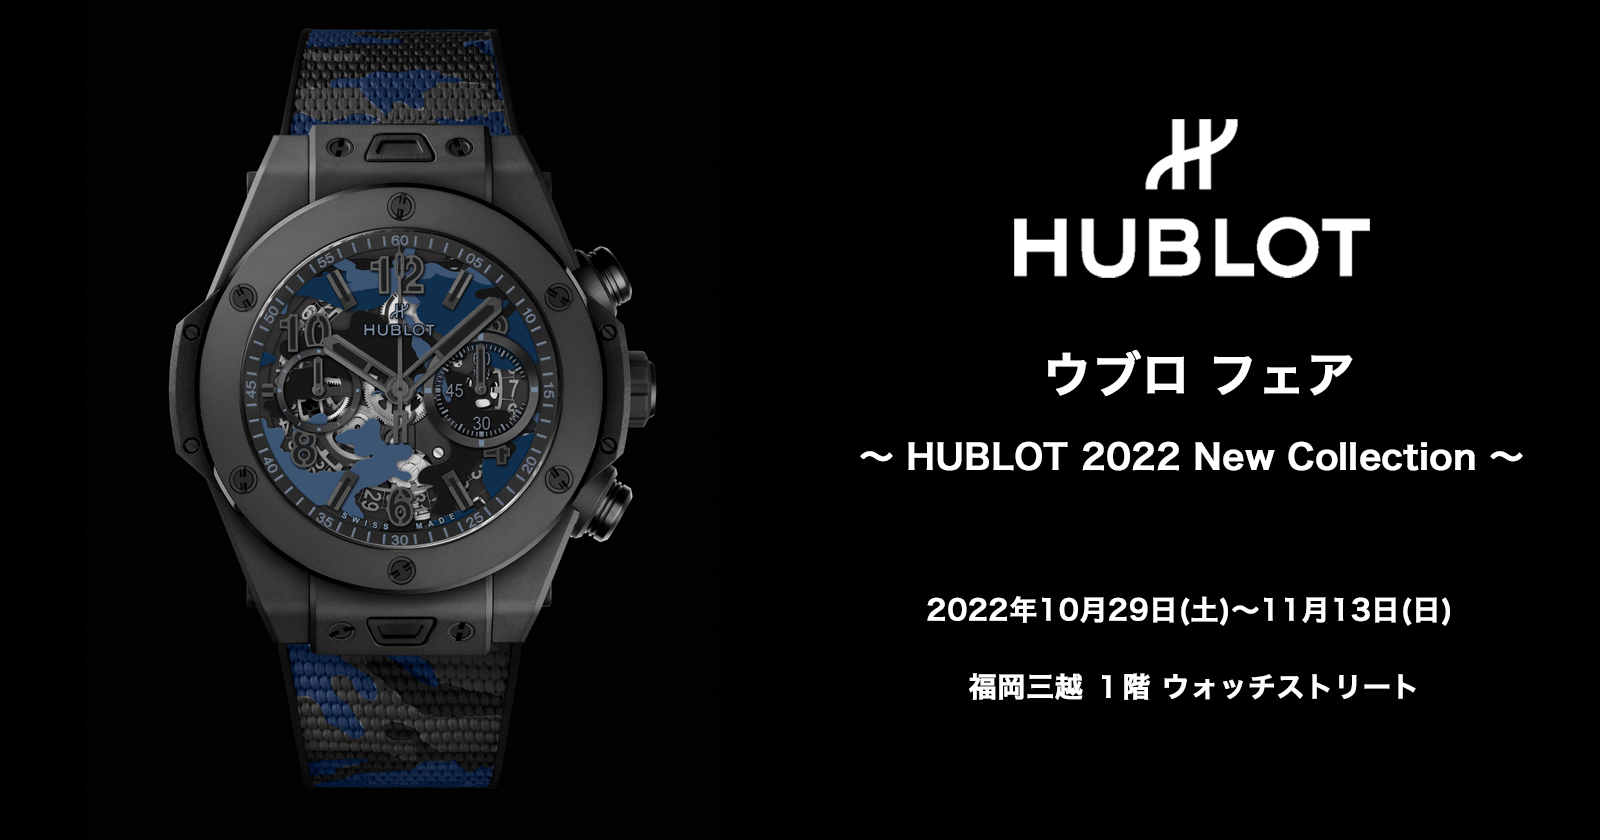 〈ウブロ〉フェア 〜 HUBLOT 2022 New Collection 〜　2022年10月29日(土)〜11月13日(日)